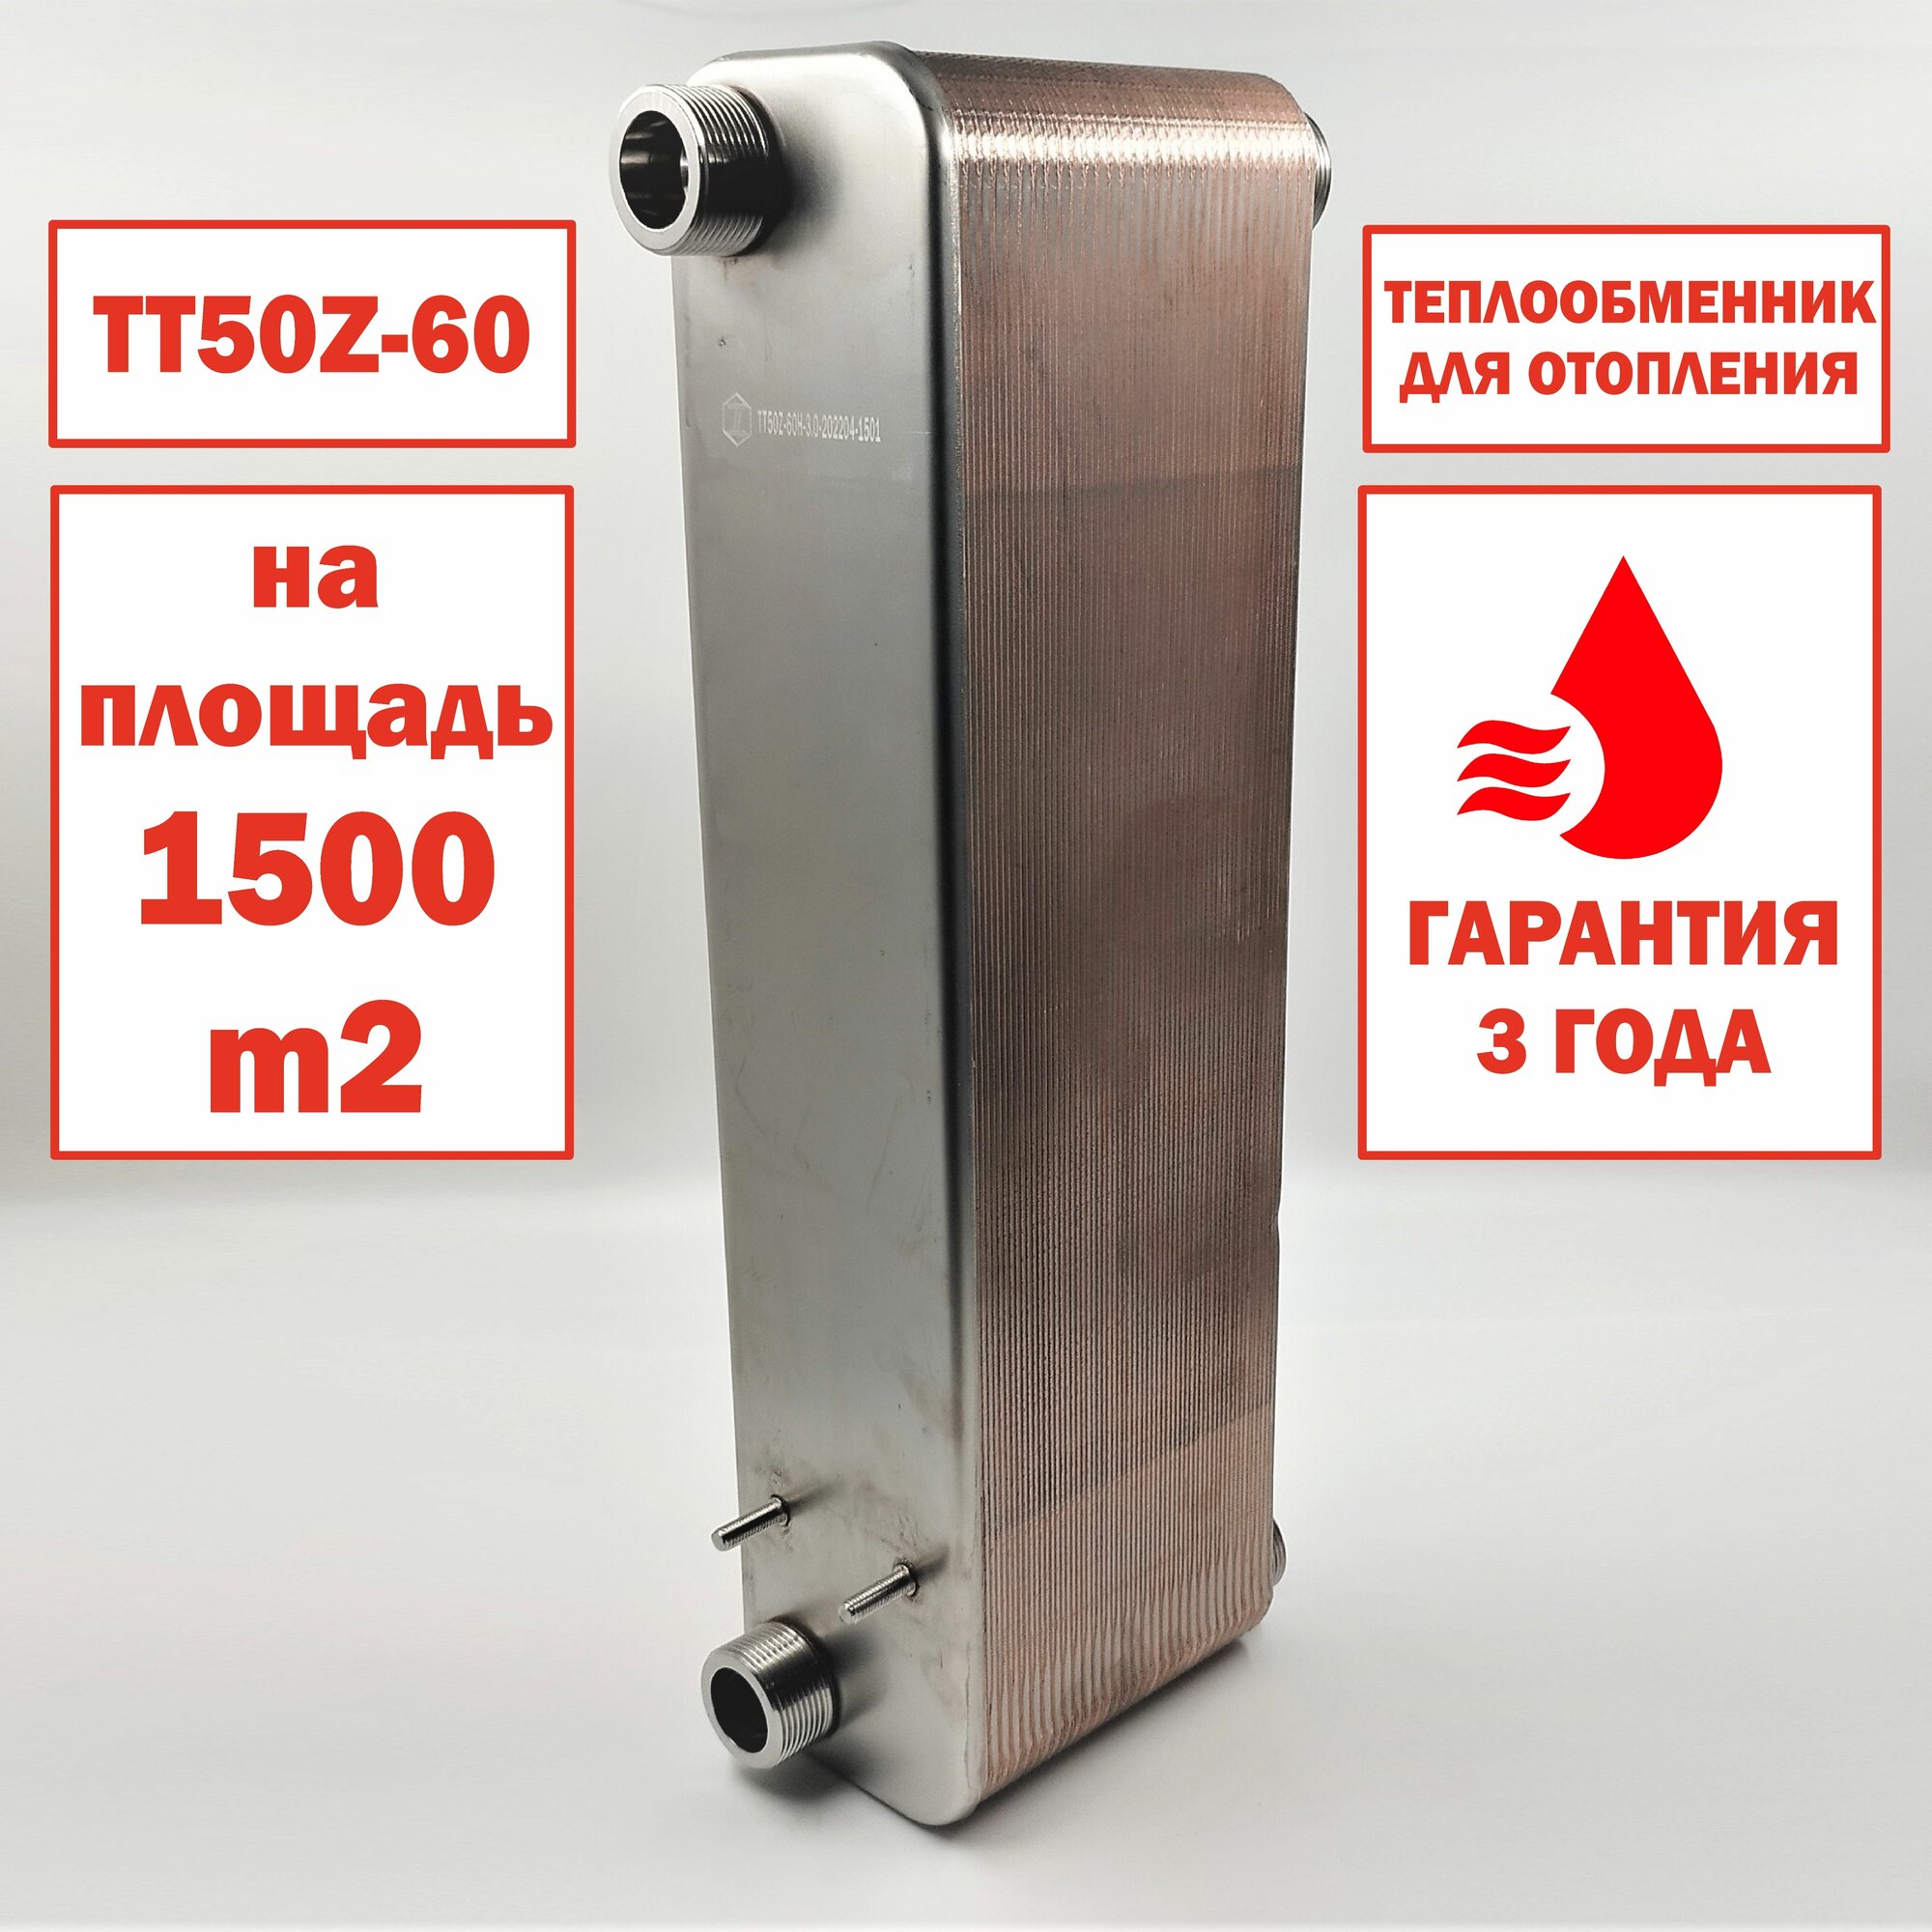 Паяный теплообменник ТТ50Z-60 для отопления площади 1500м2. Мощность 150 кВт.